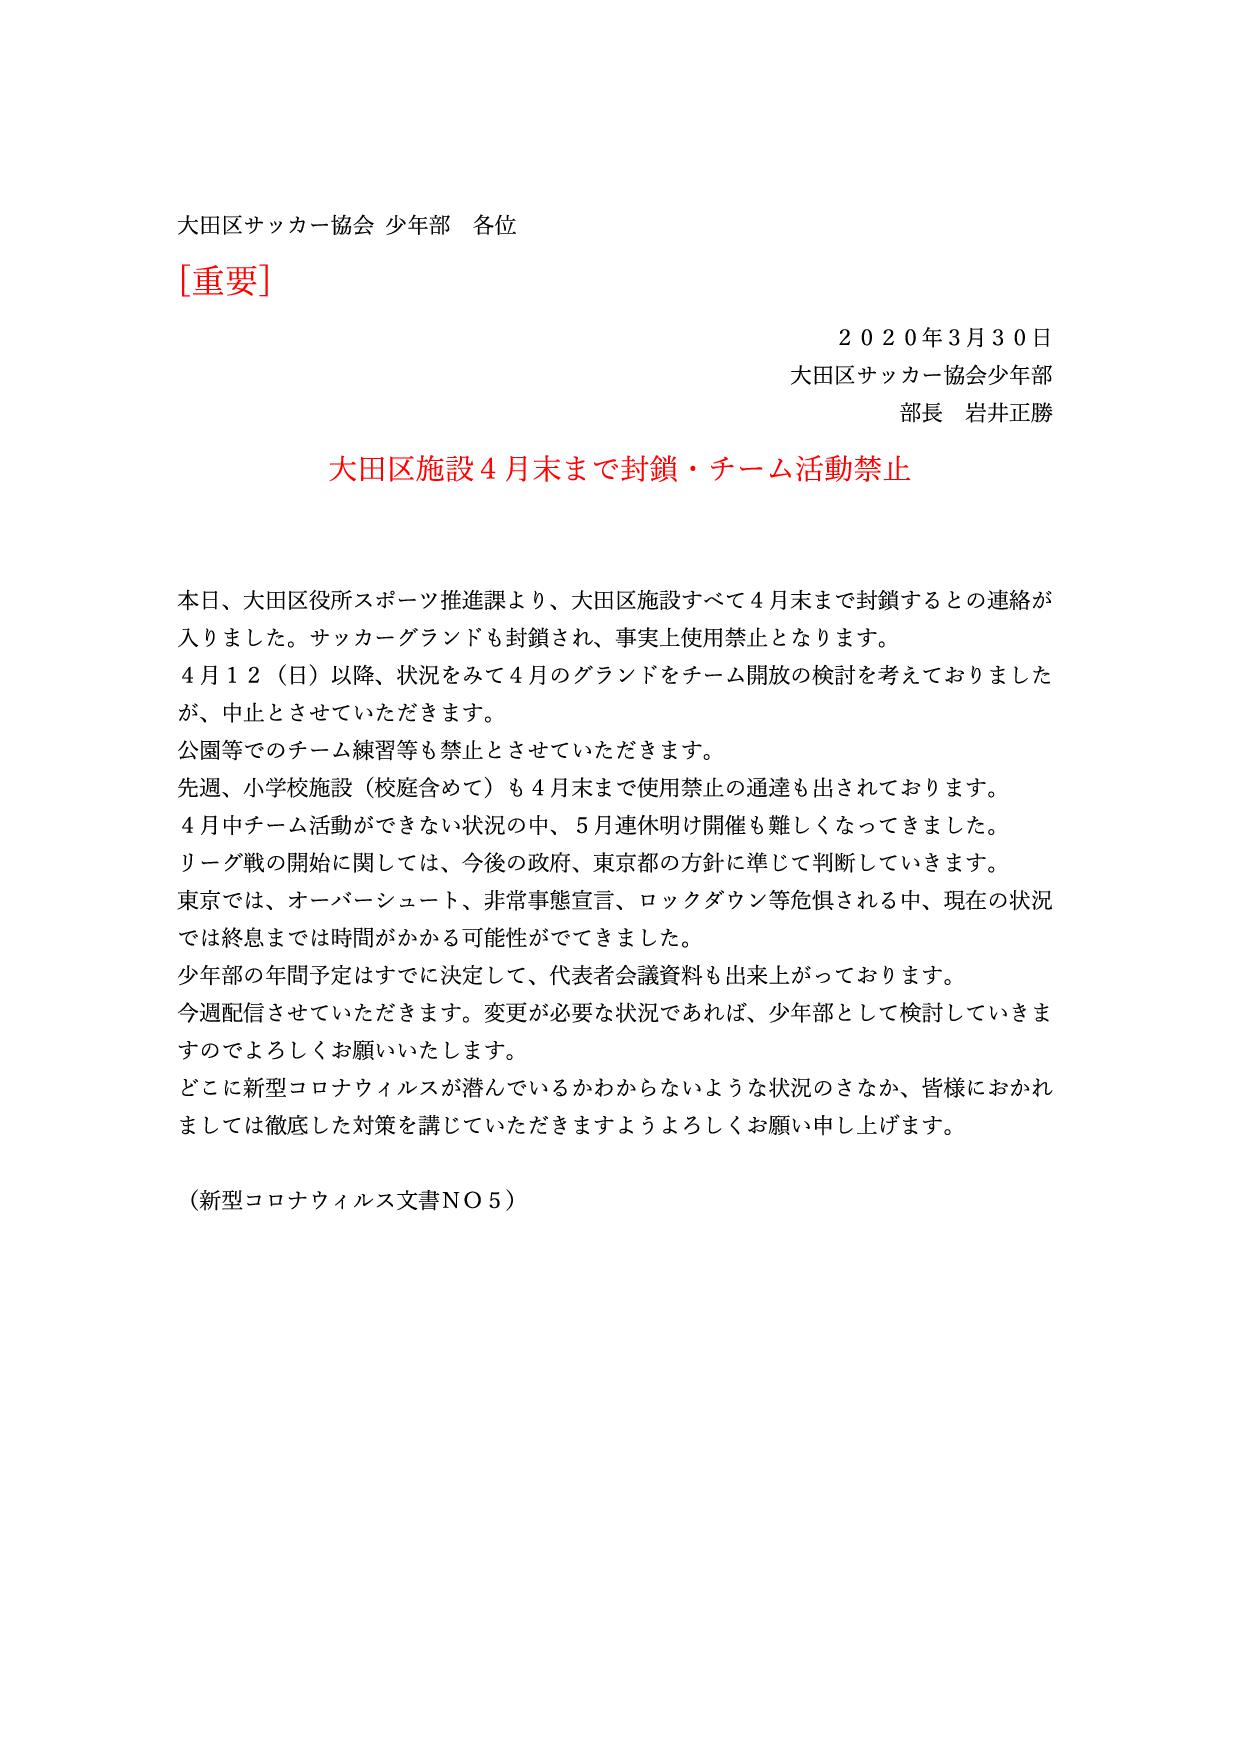 大田区施設４月末まで封鎖・チーム活動禁止